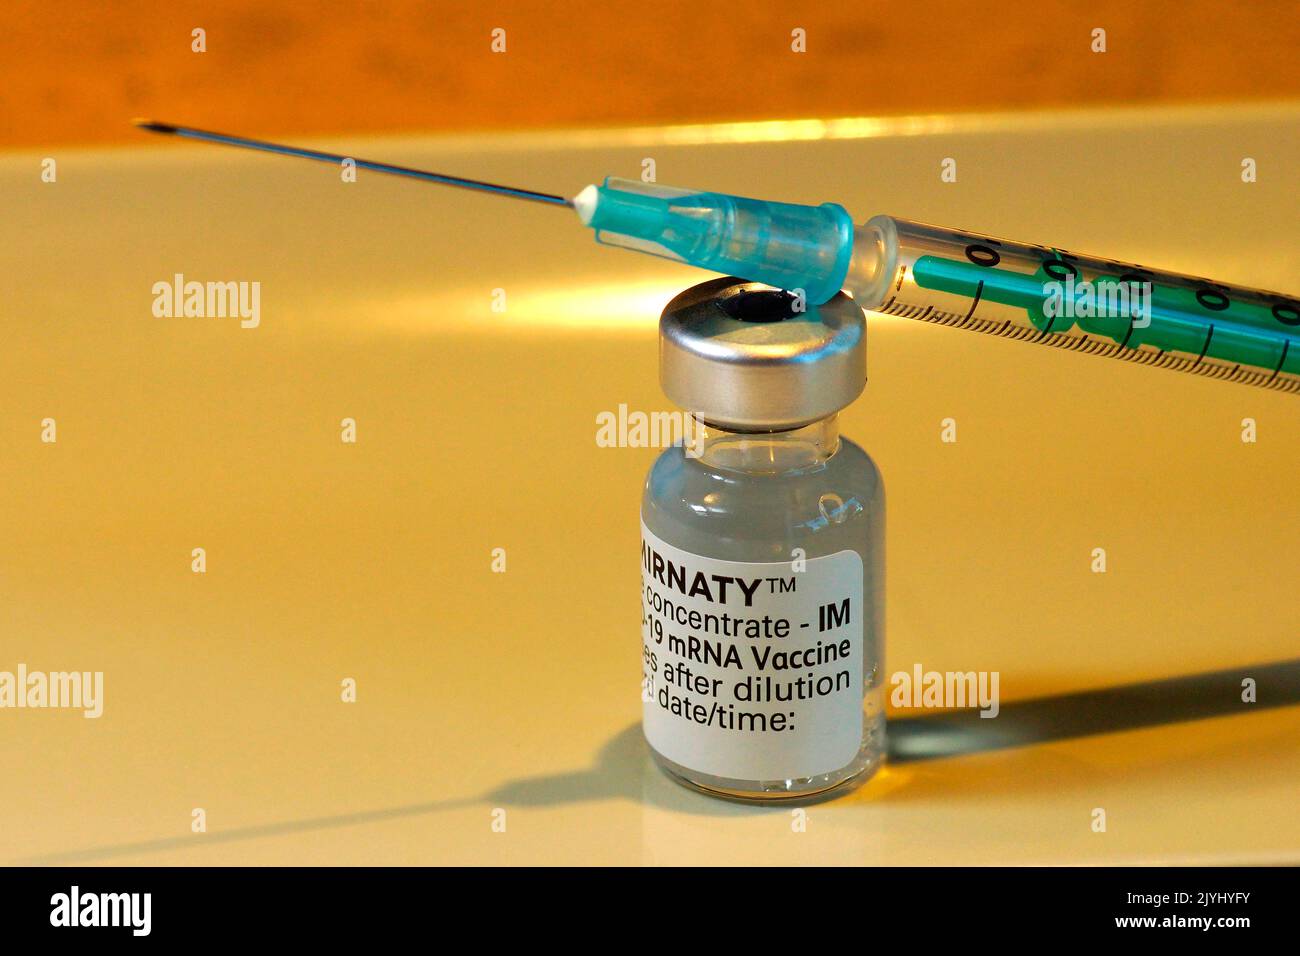 Iniezione con il vaccino corona Comirnaty di Biontex Pfizer Foto Stock